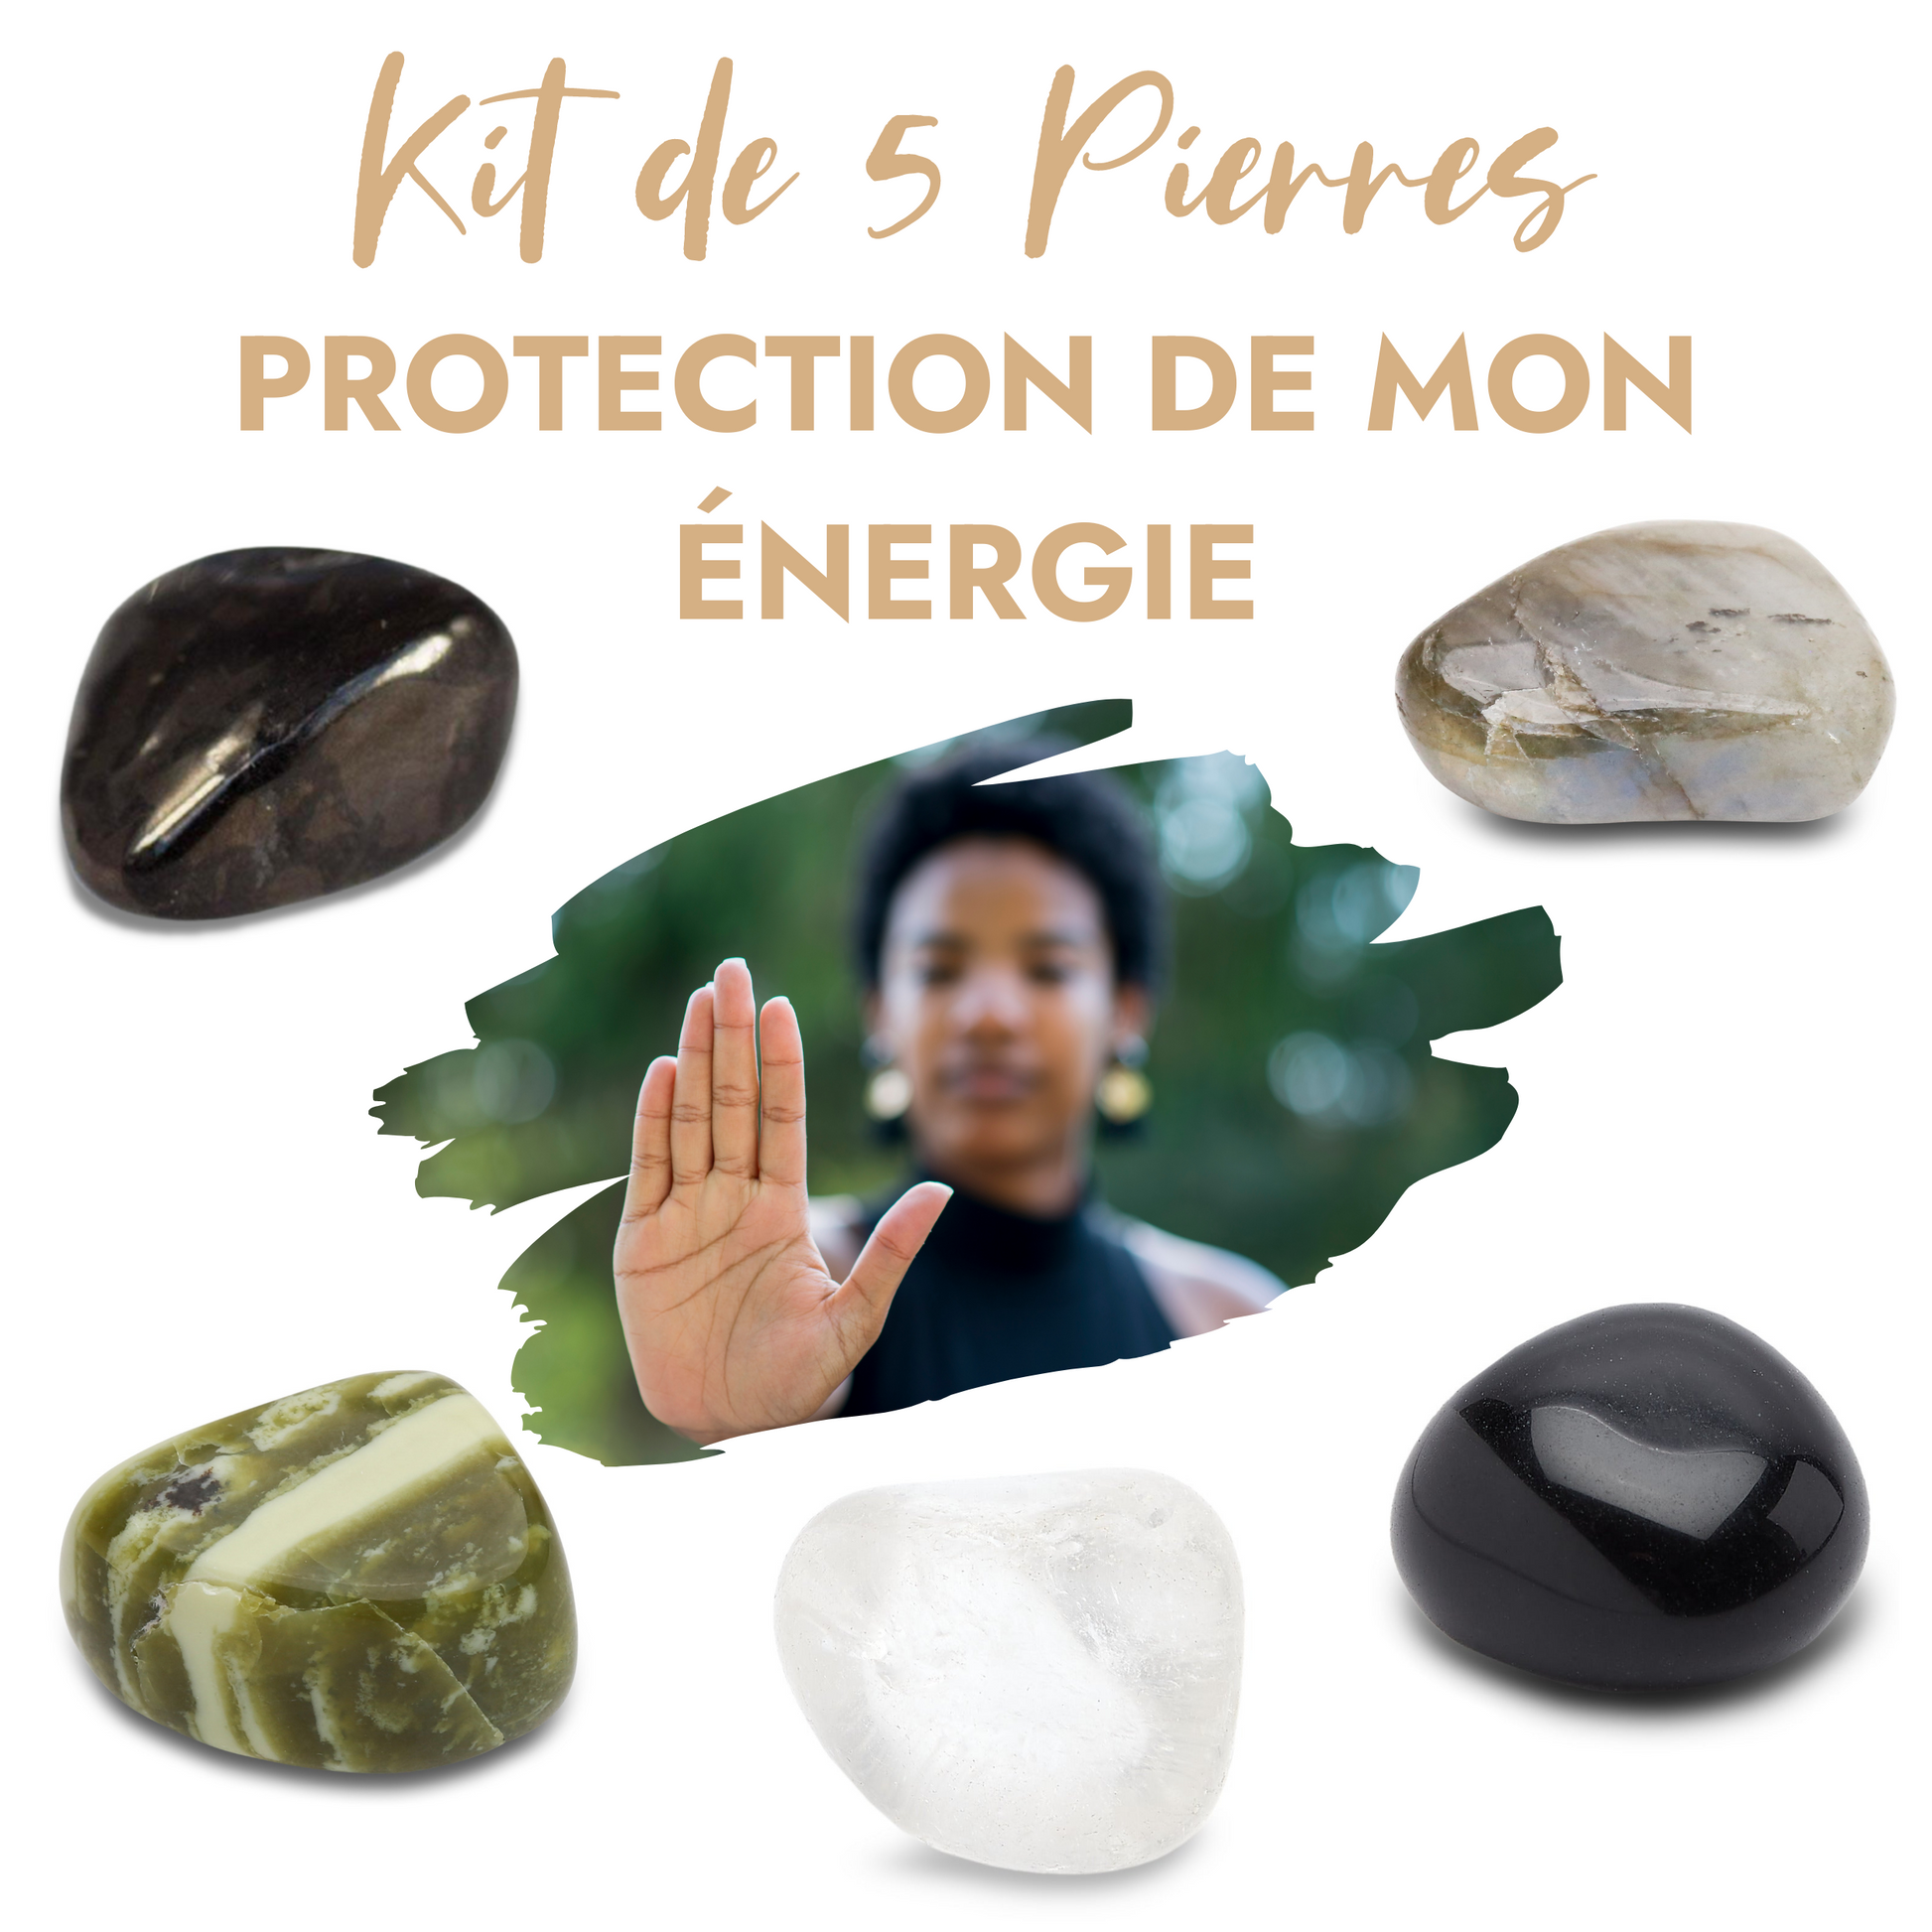 Kit de 5 pierres “Protection de mon énergie” – Karma Yoga Shop